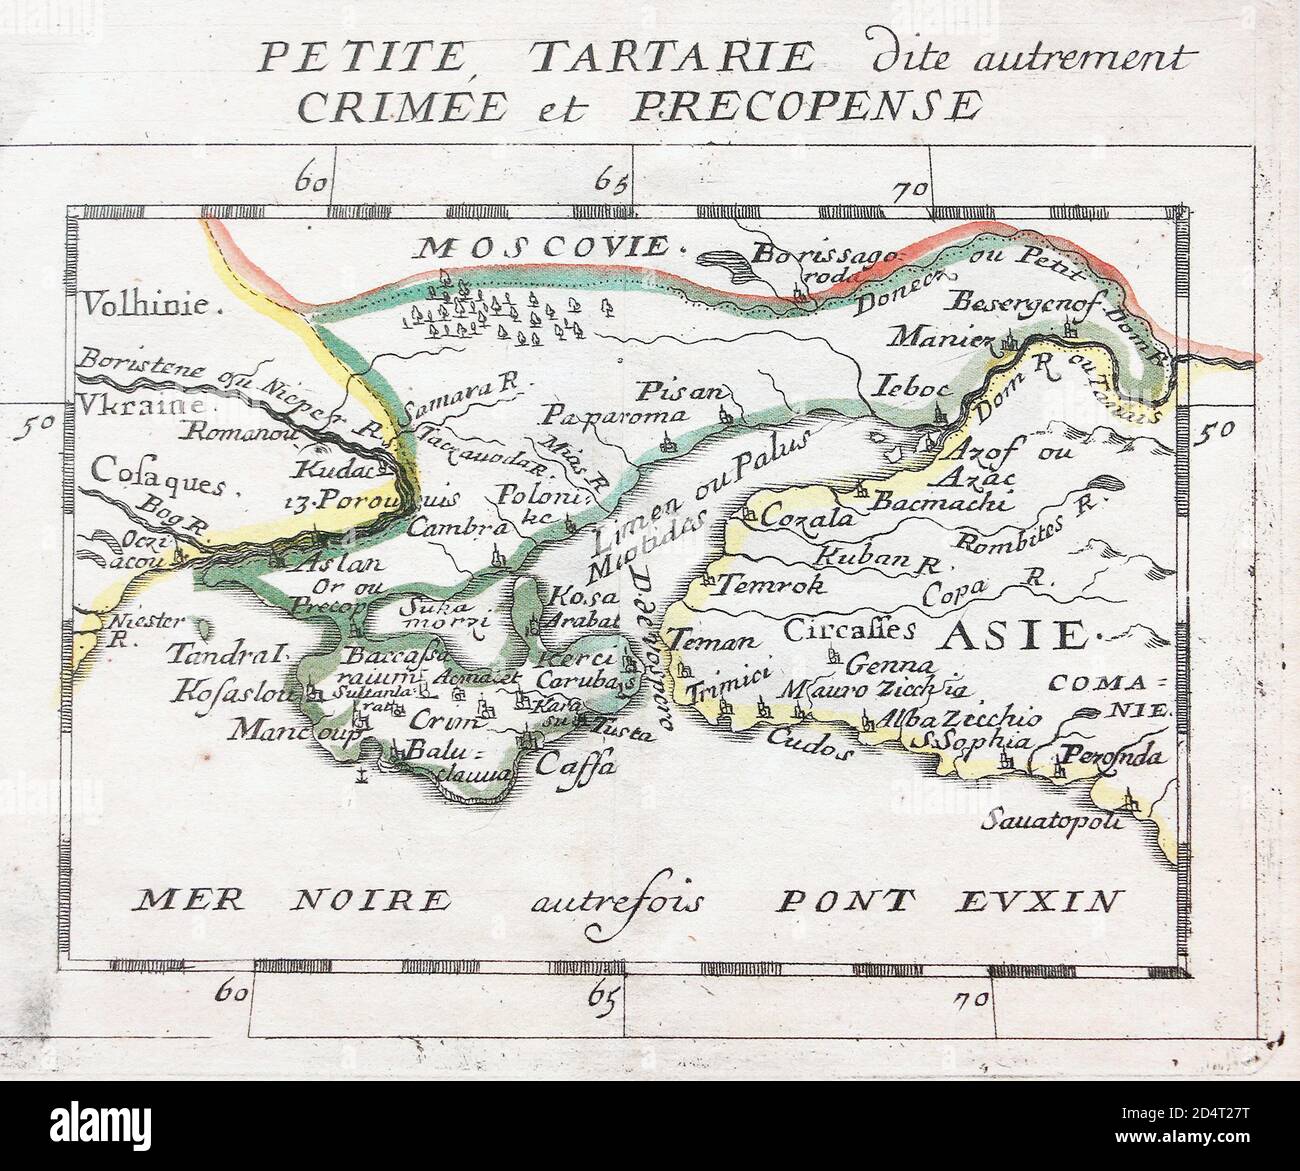 Carte de la petite Tataria, autrement connue sous le nom de Crimée et Perekopen au milieu du XVIIe siècle. Banque D'Images